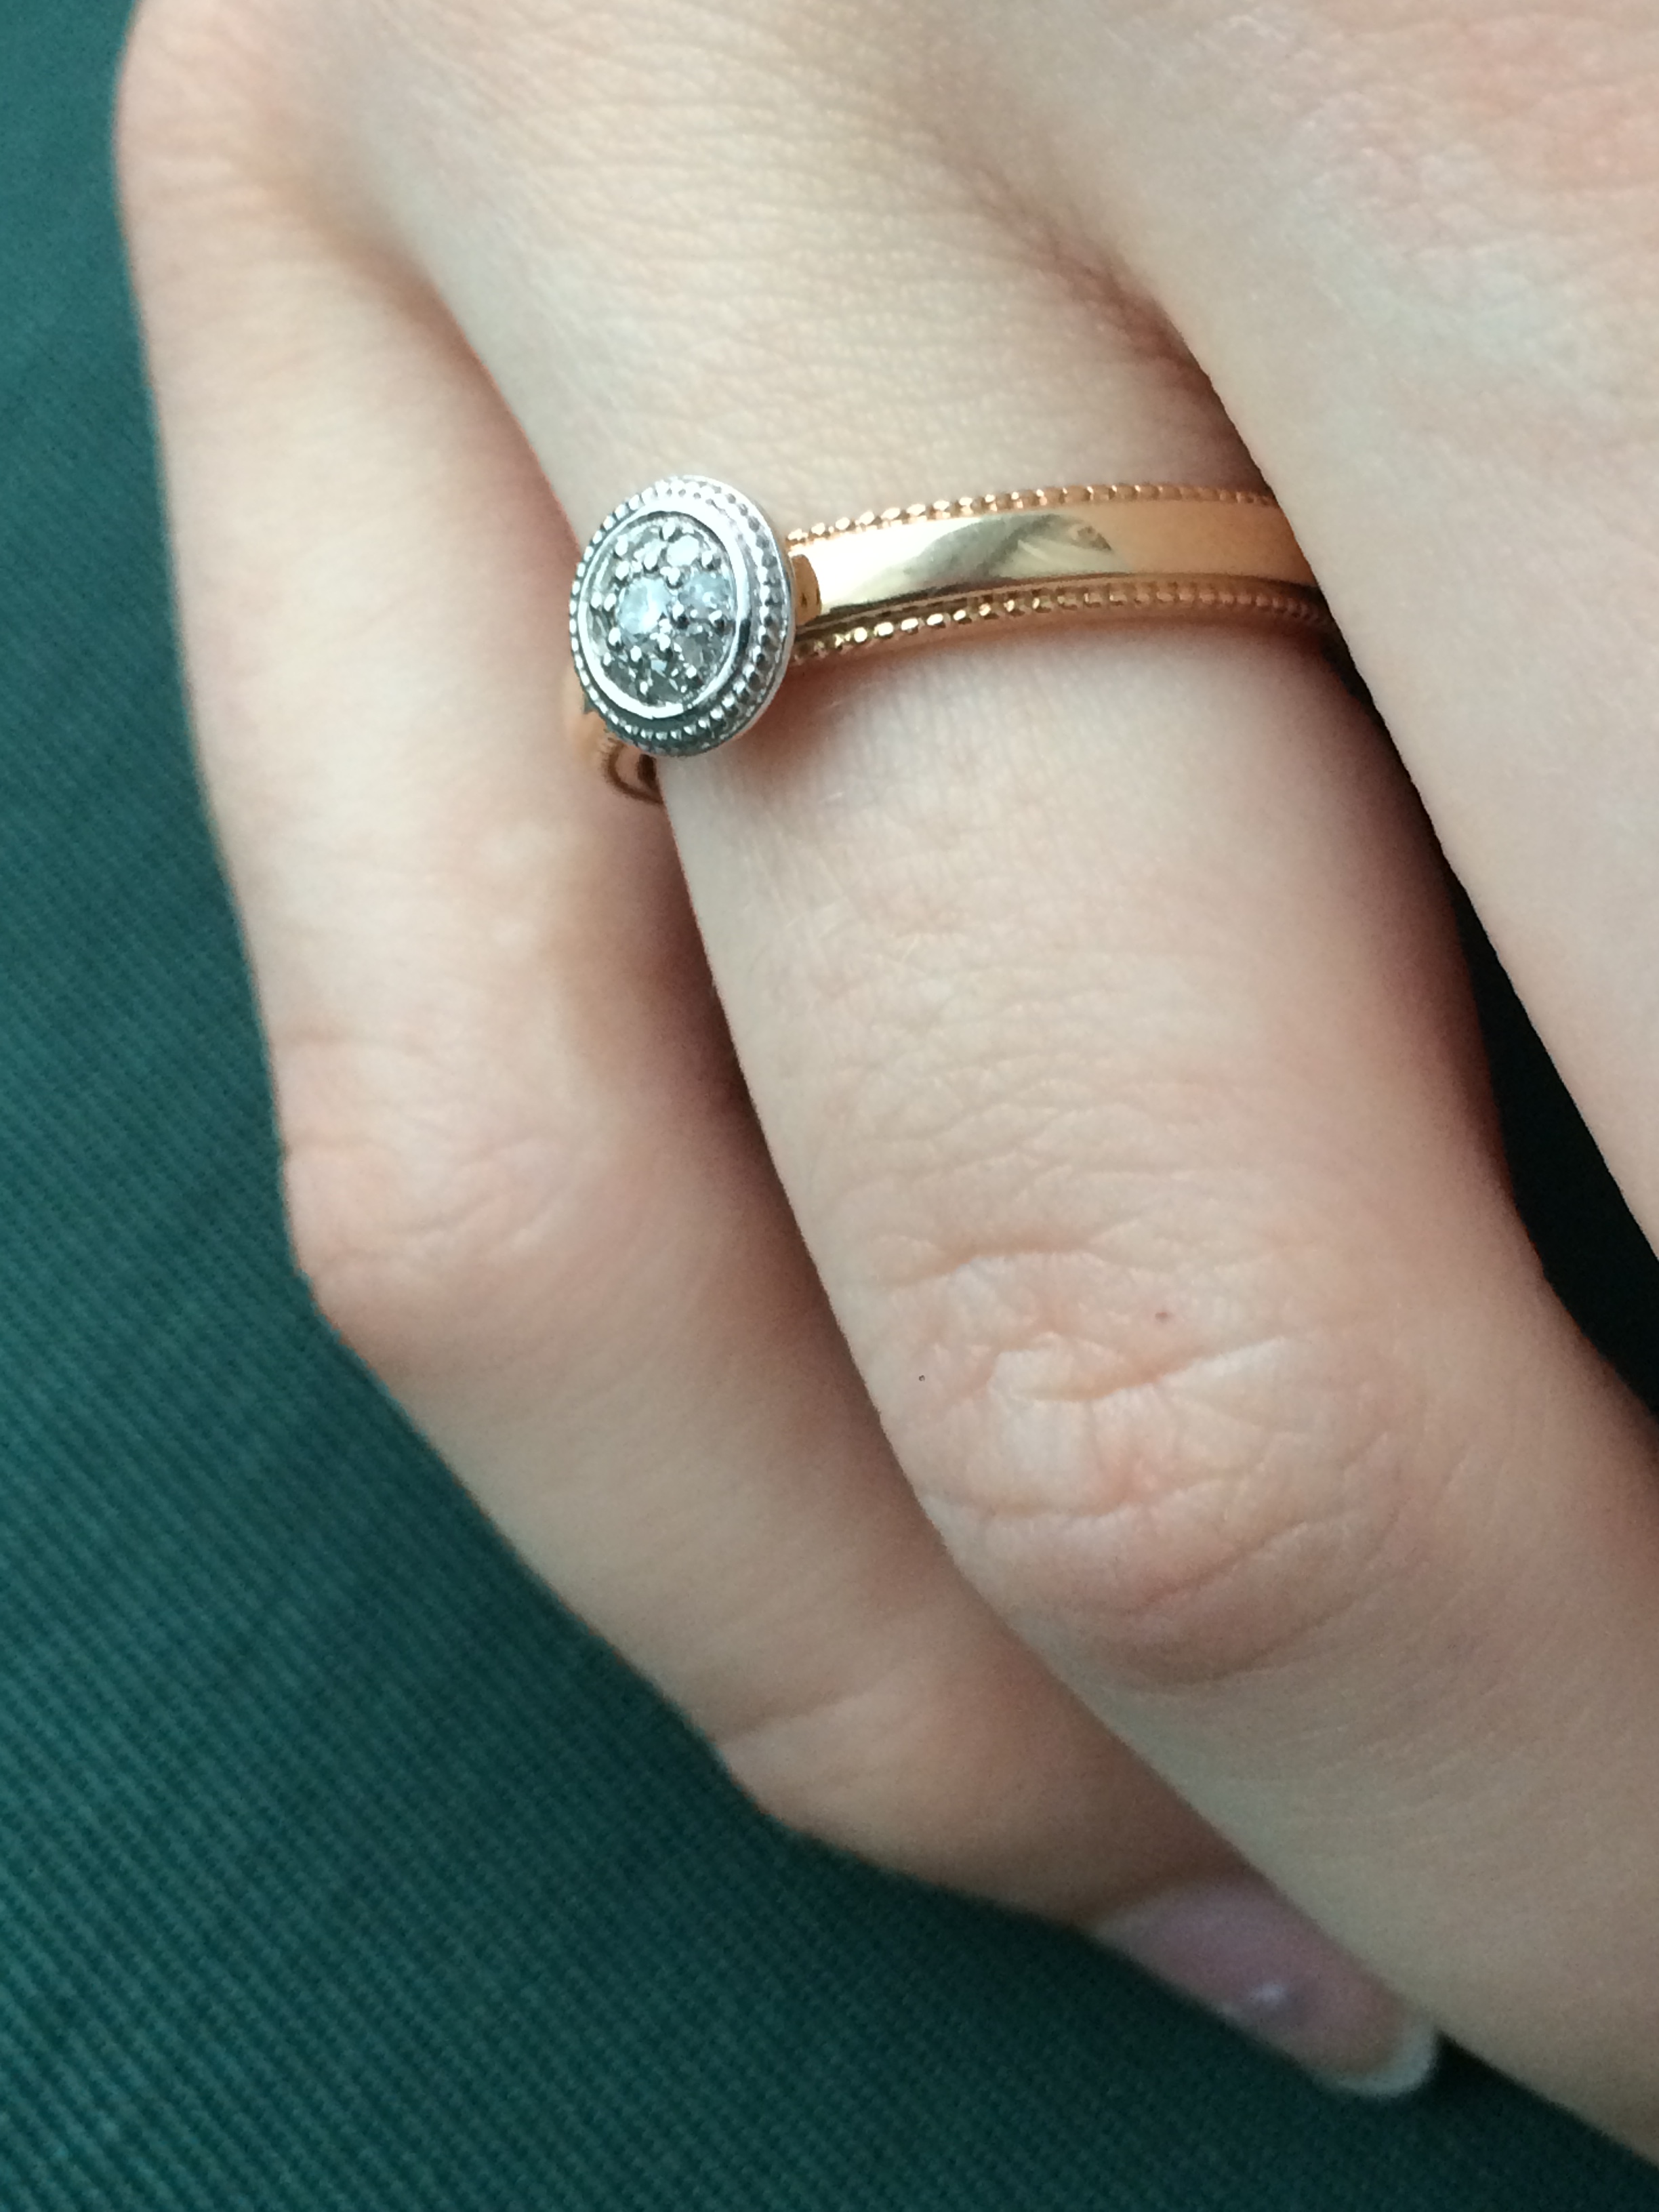 Золотое кольцо оставляет черные следы. Золотое кольцо Пандора. Золотое кольцо с черными полосками. Кольцо золотое на руке. Стильное золотое кольцо женское.